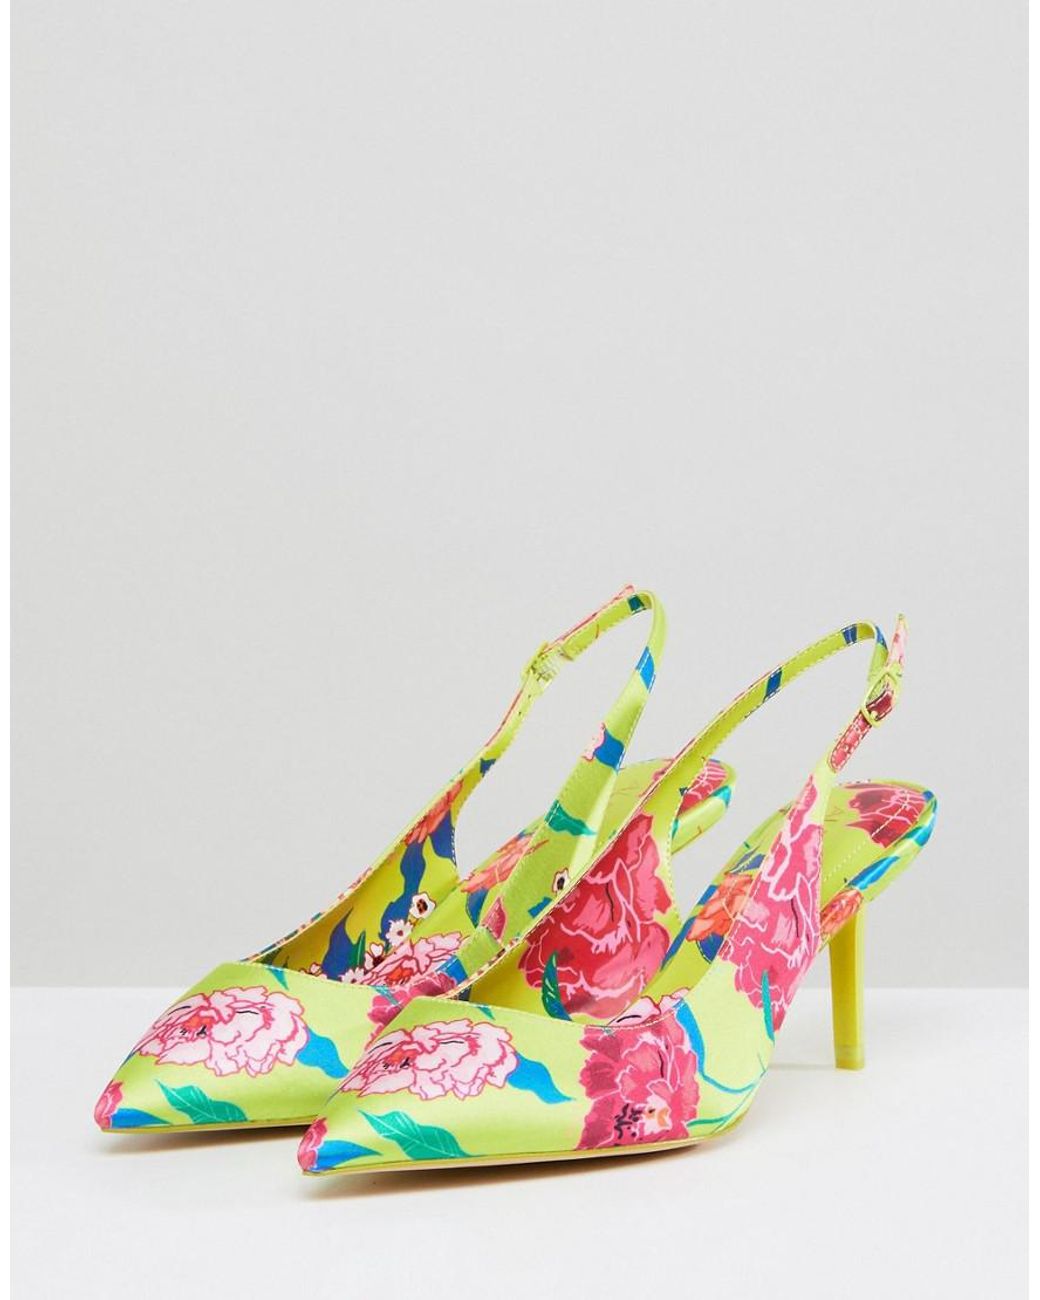 Fun Yellow Heels - Flower Heels - High Heel Sandals - $35.00 - Lulus